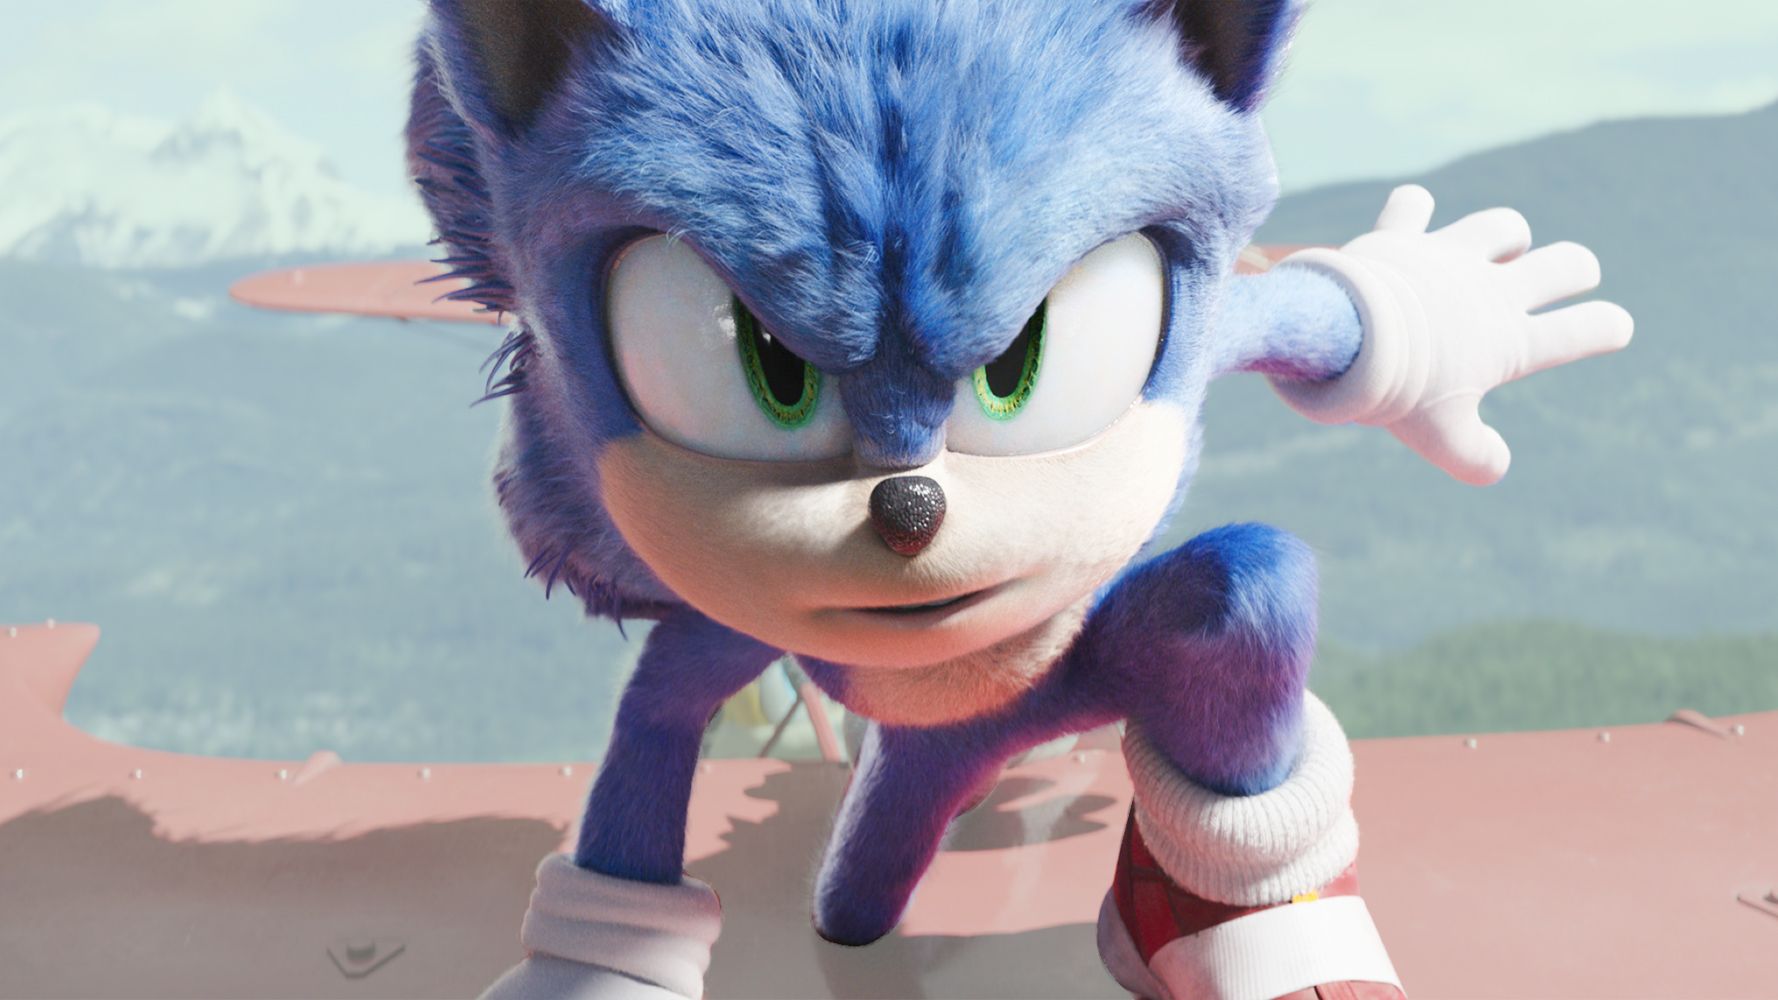 Feito por fãs, Sonic 2 HD recebe trailer e imagens